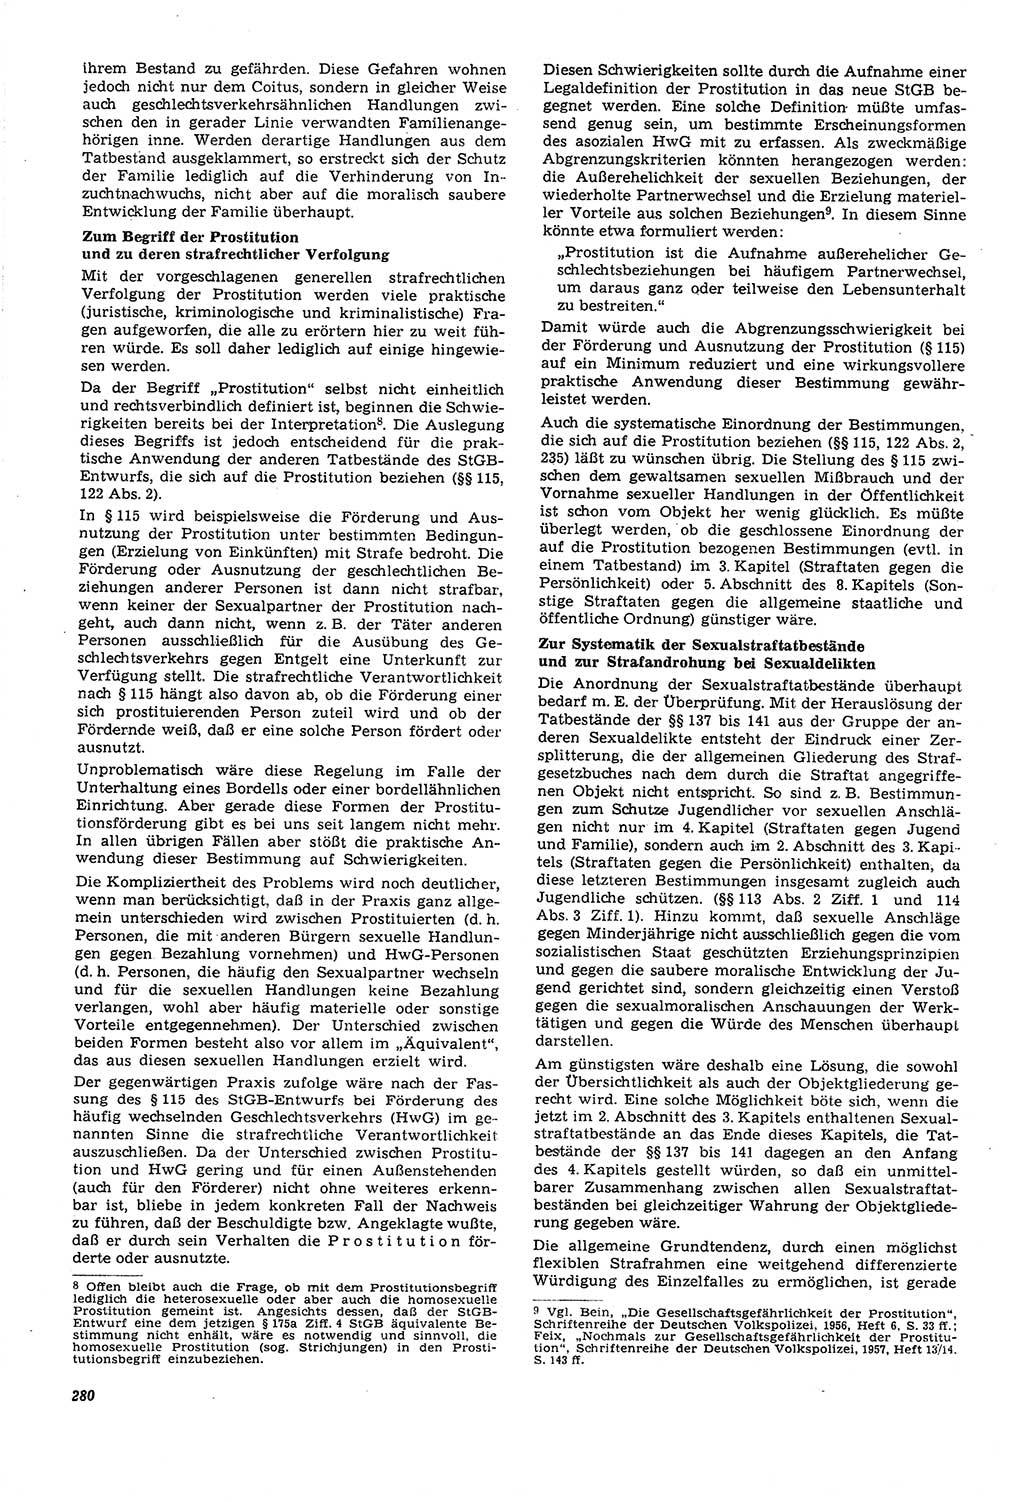 Neue Justiz (NJ), Zeitschrift für Recht und Rechtswissenschaft [Deutsche Demokratische Republik (DDR)], 21. Jahrgang 1967, Seite 280 (NJ DDR 1967, S. 280)